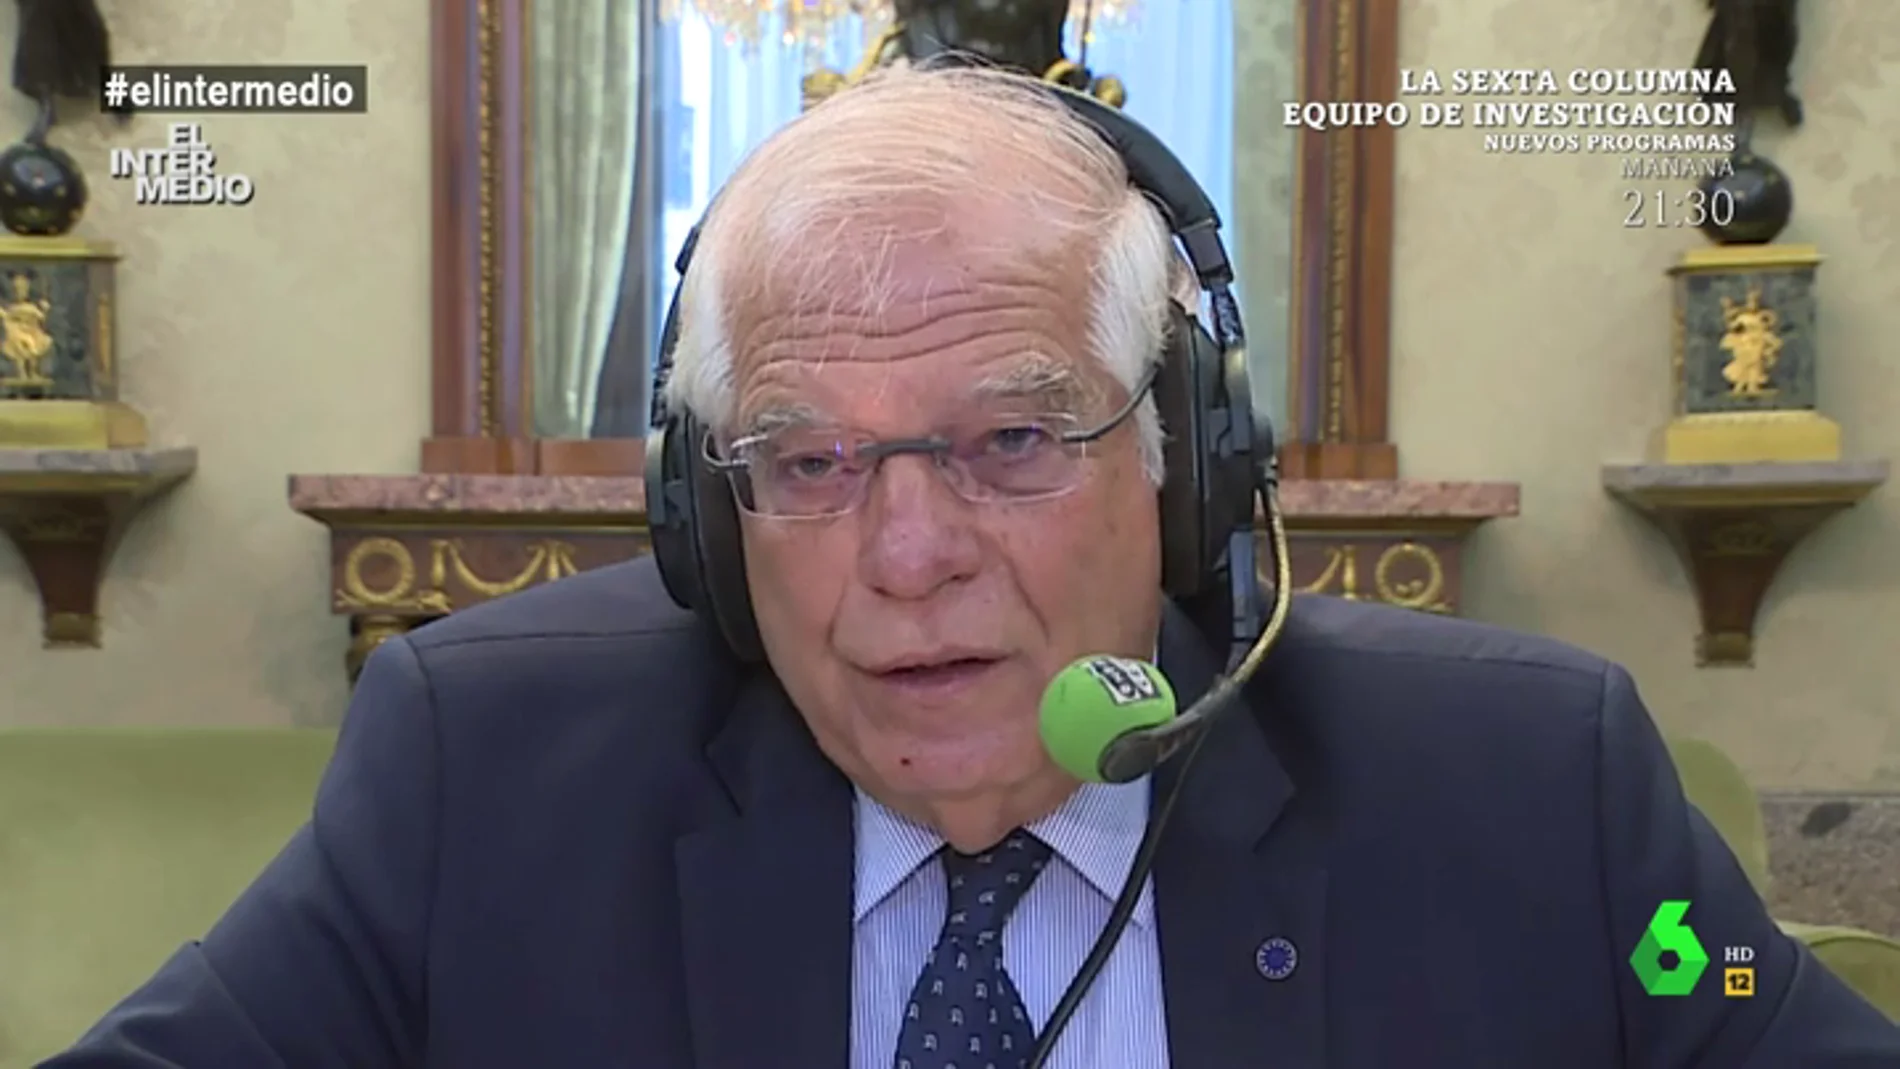  El ministro de Asuntos Exteriores Josep Borrell